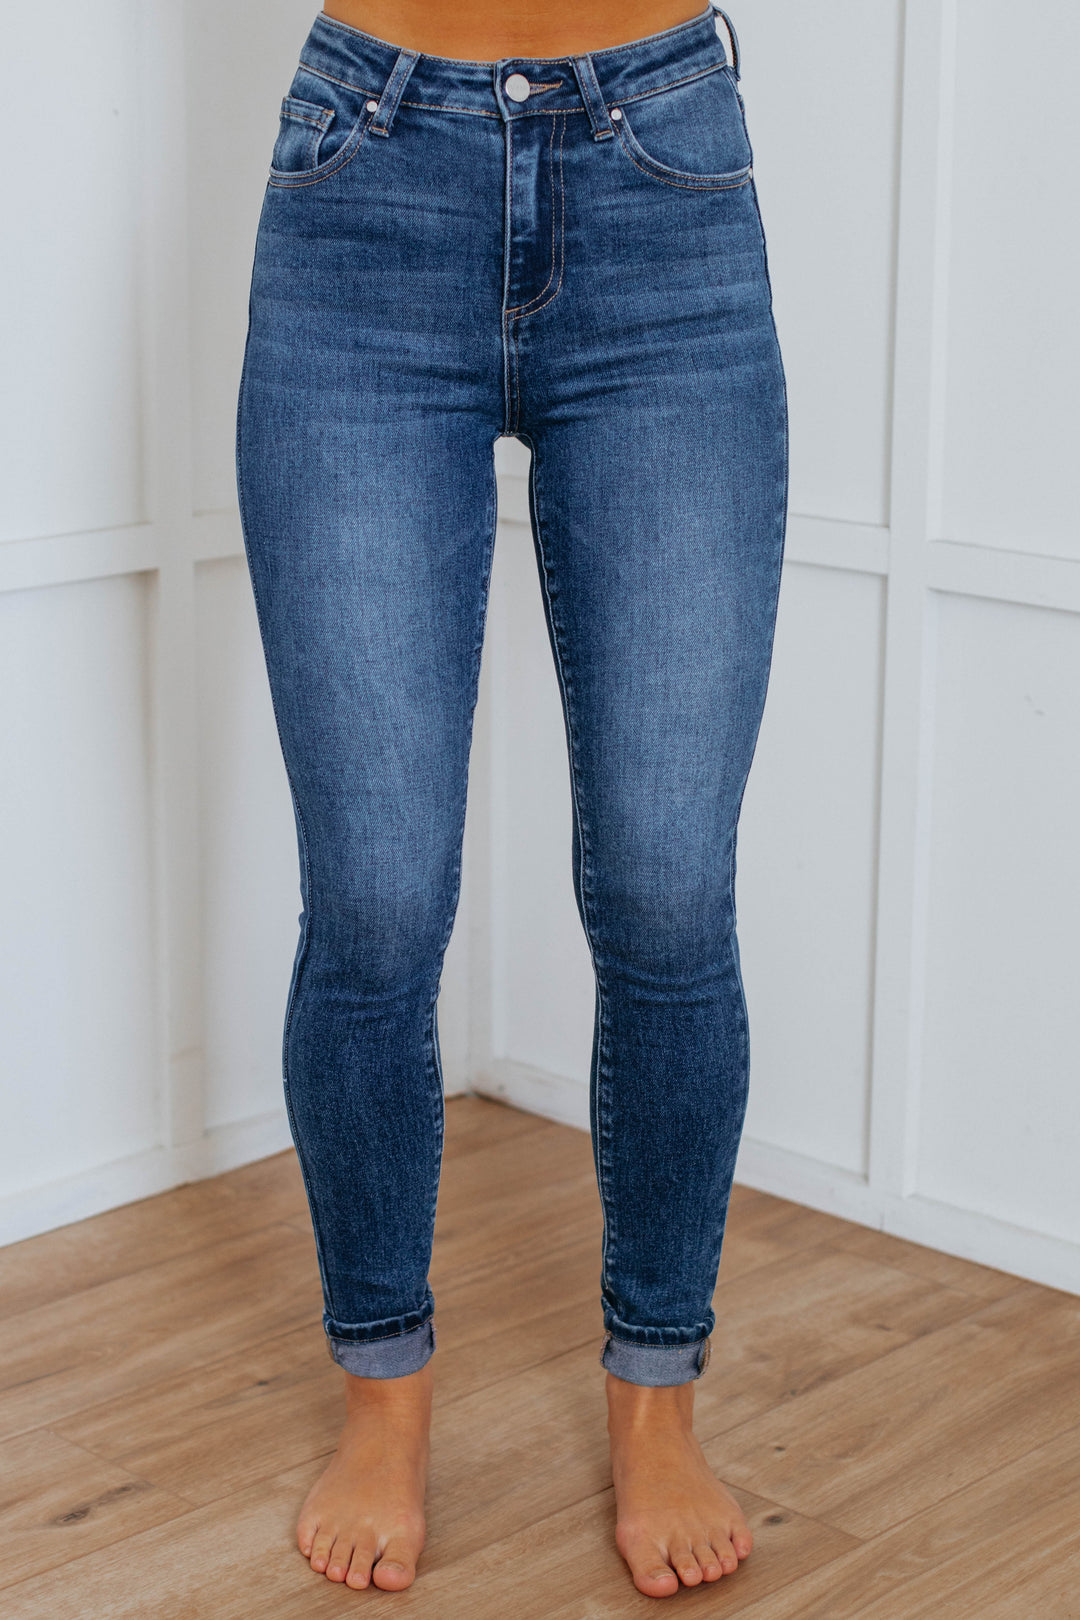 Raelyn Risen Jeans